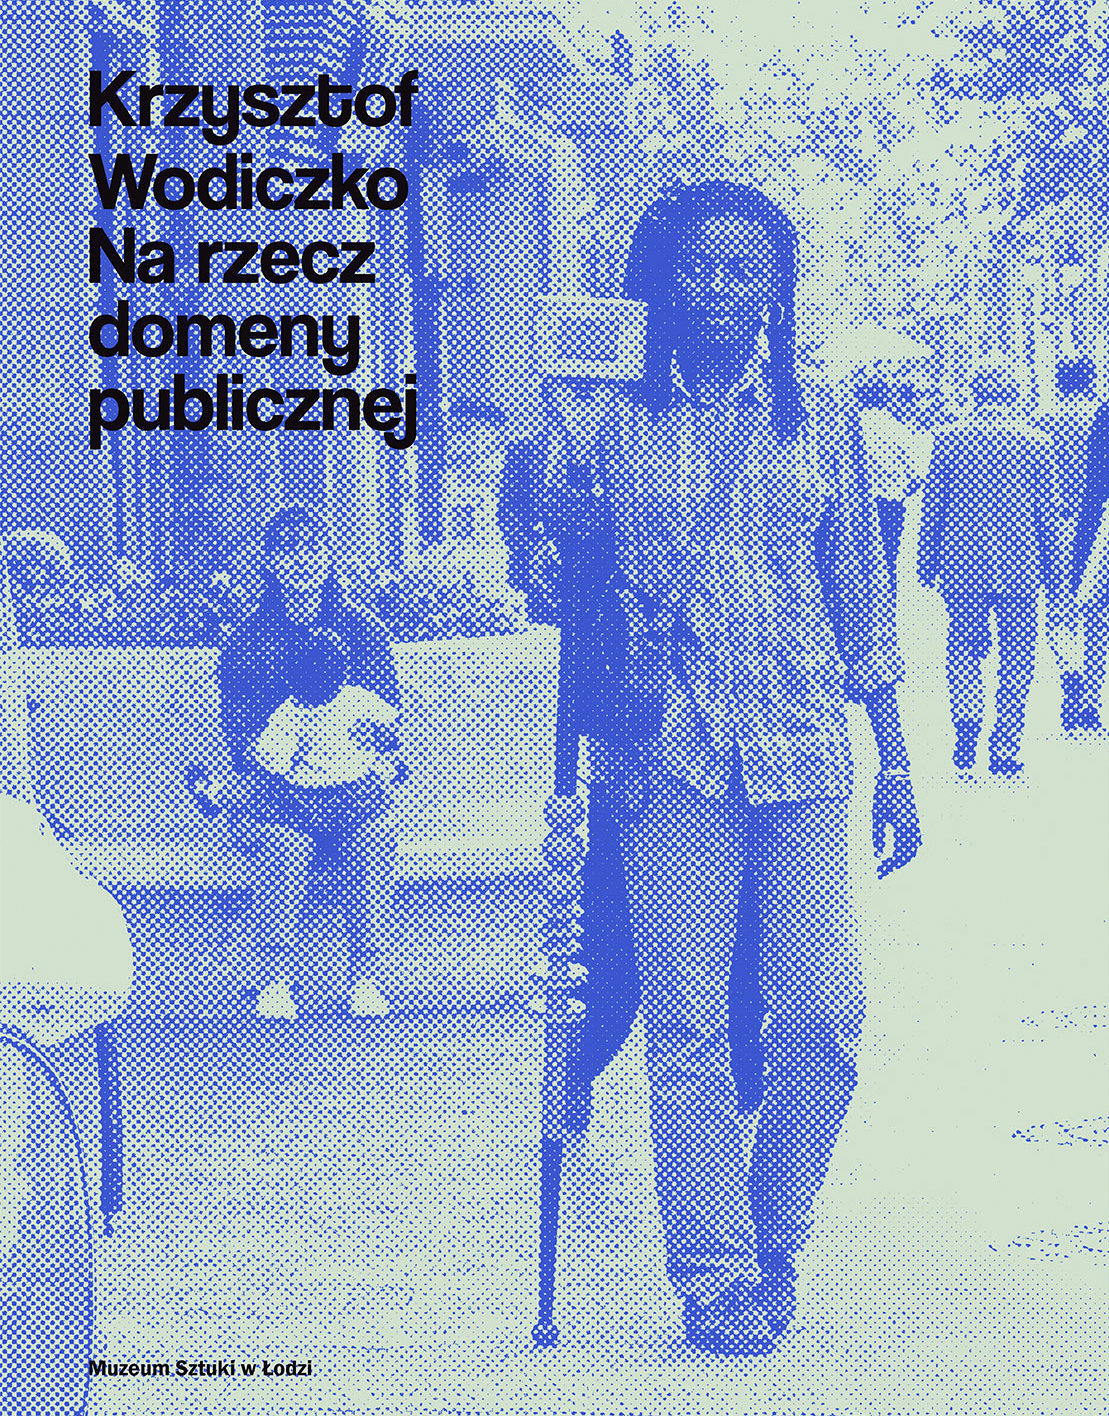 Katalog wystawy Krzysztofa Wodiczko, Muzeum Sztuki w Łodzi (źródło: dzięki uprzejmości K. Jureckiego)